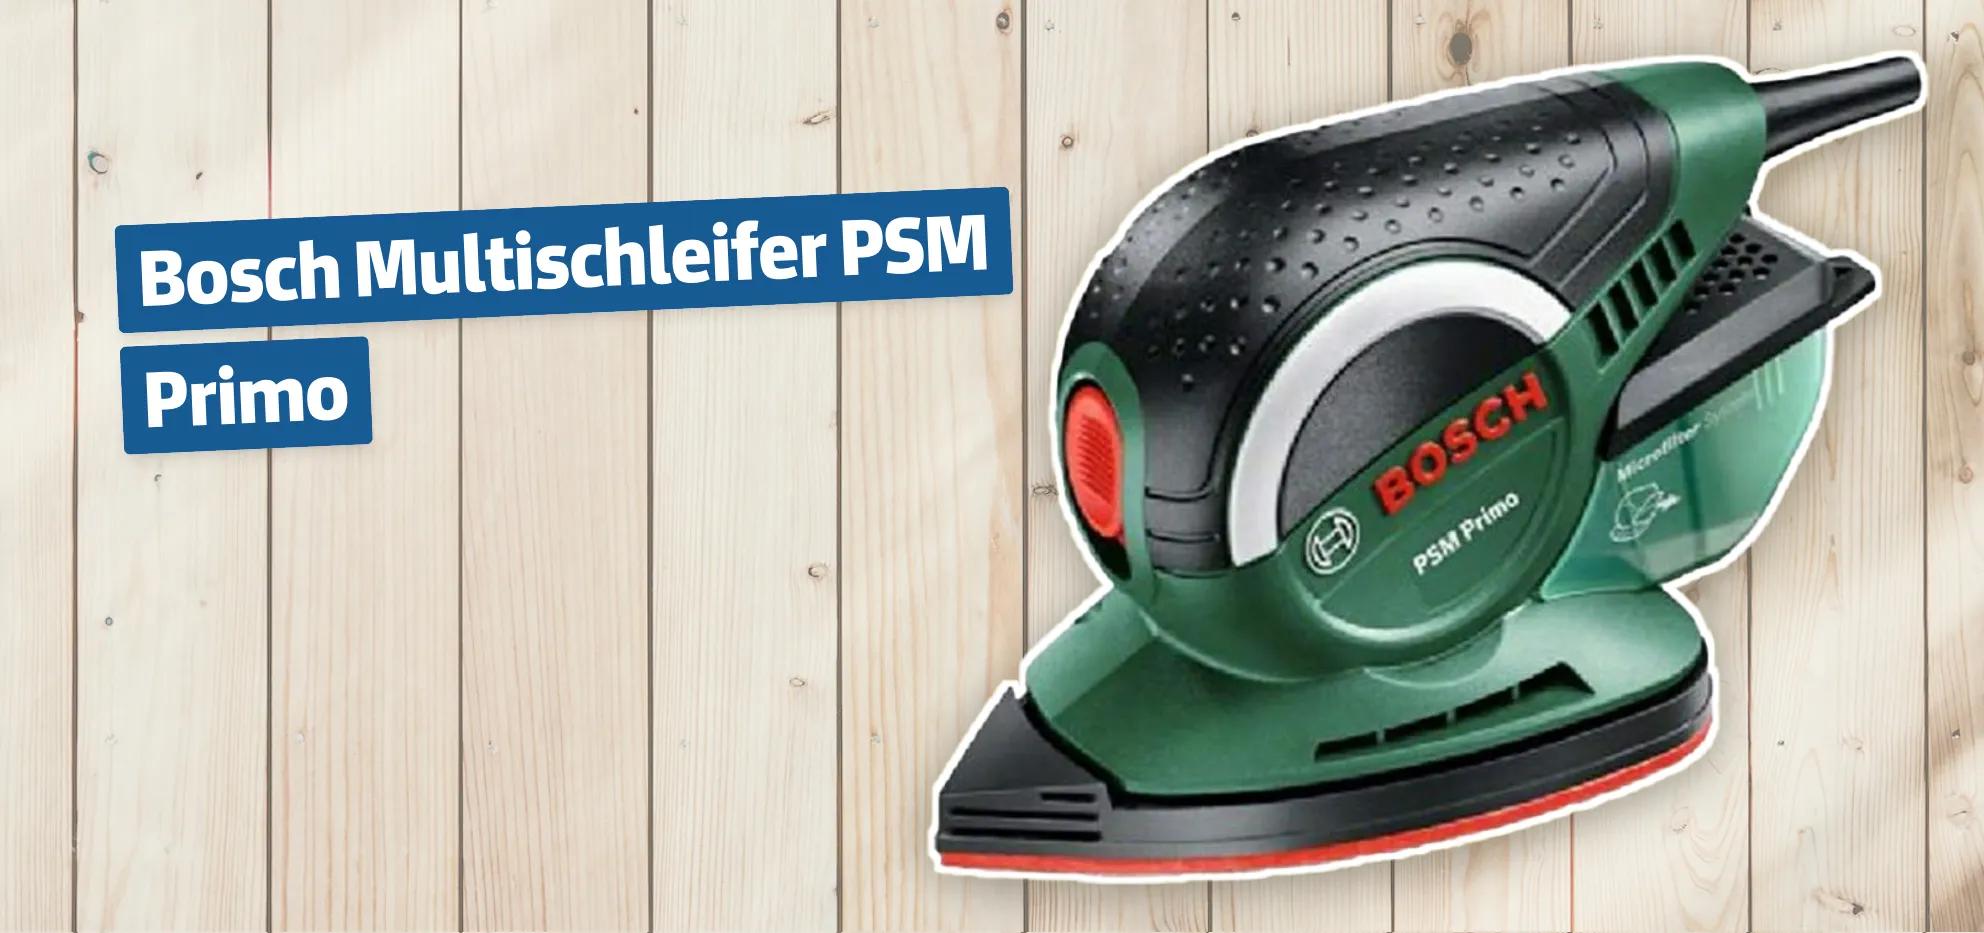 Bosch Multischleifer PSM Primo